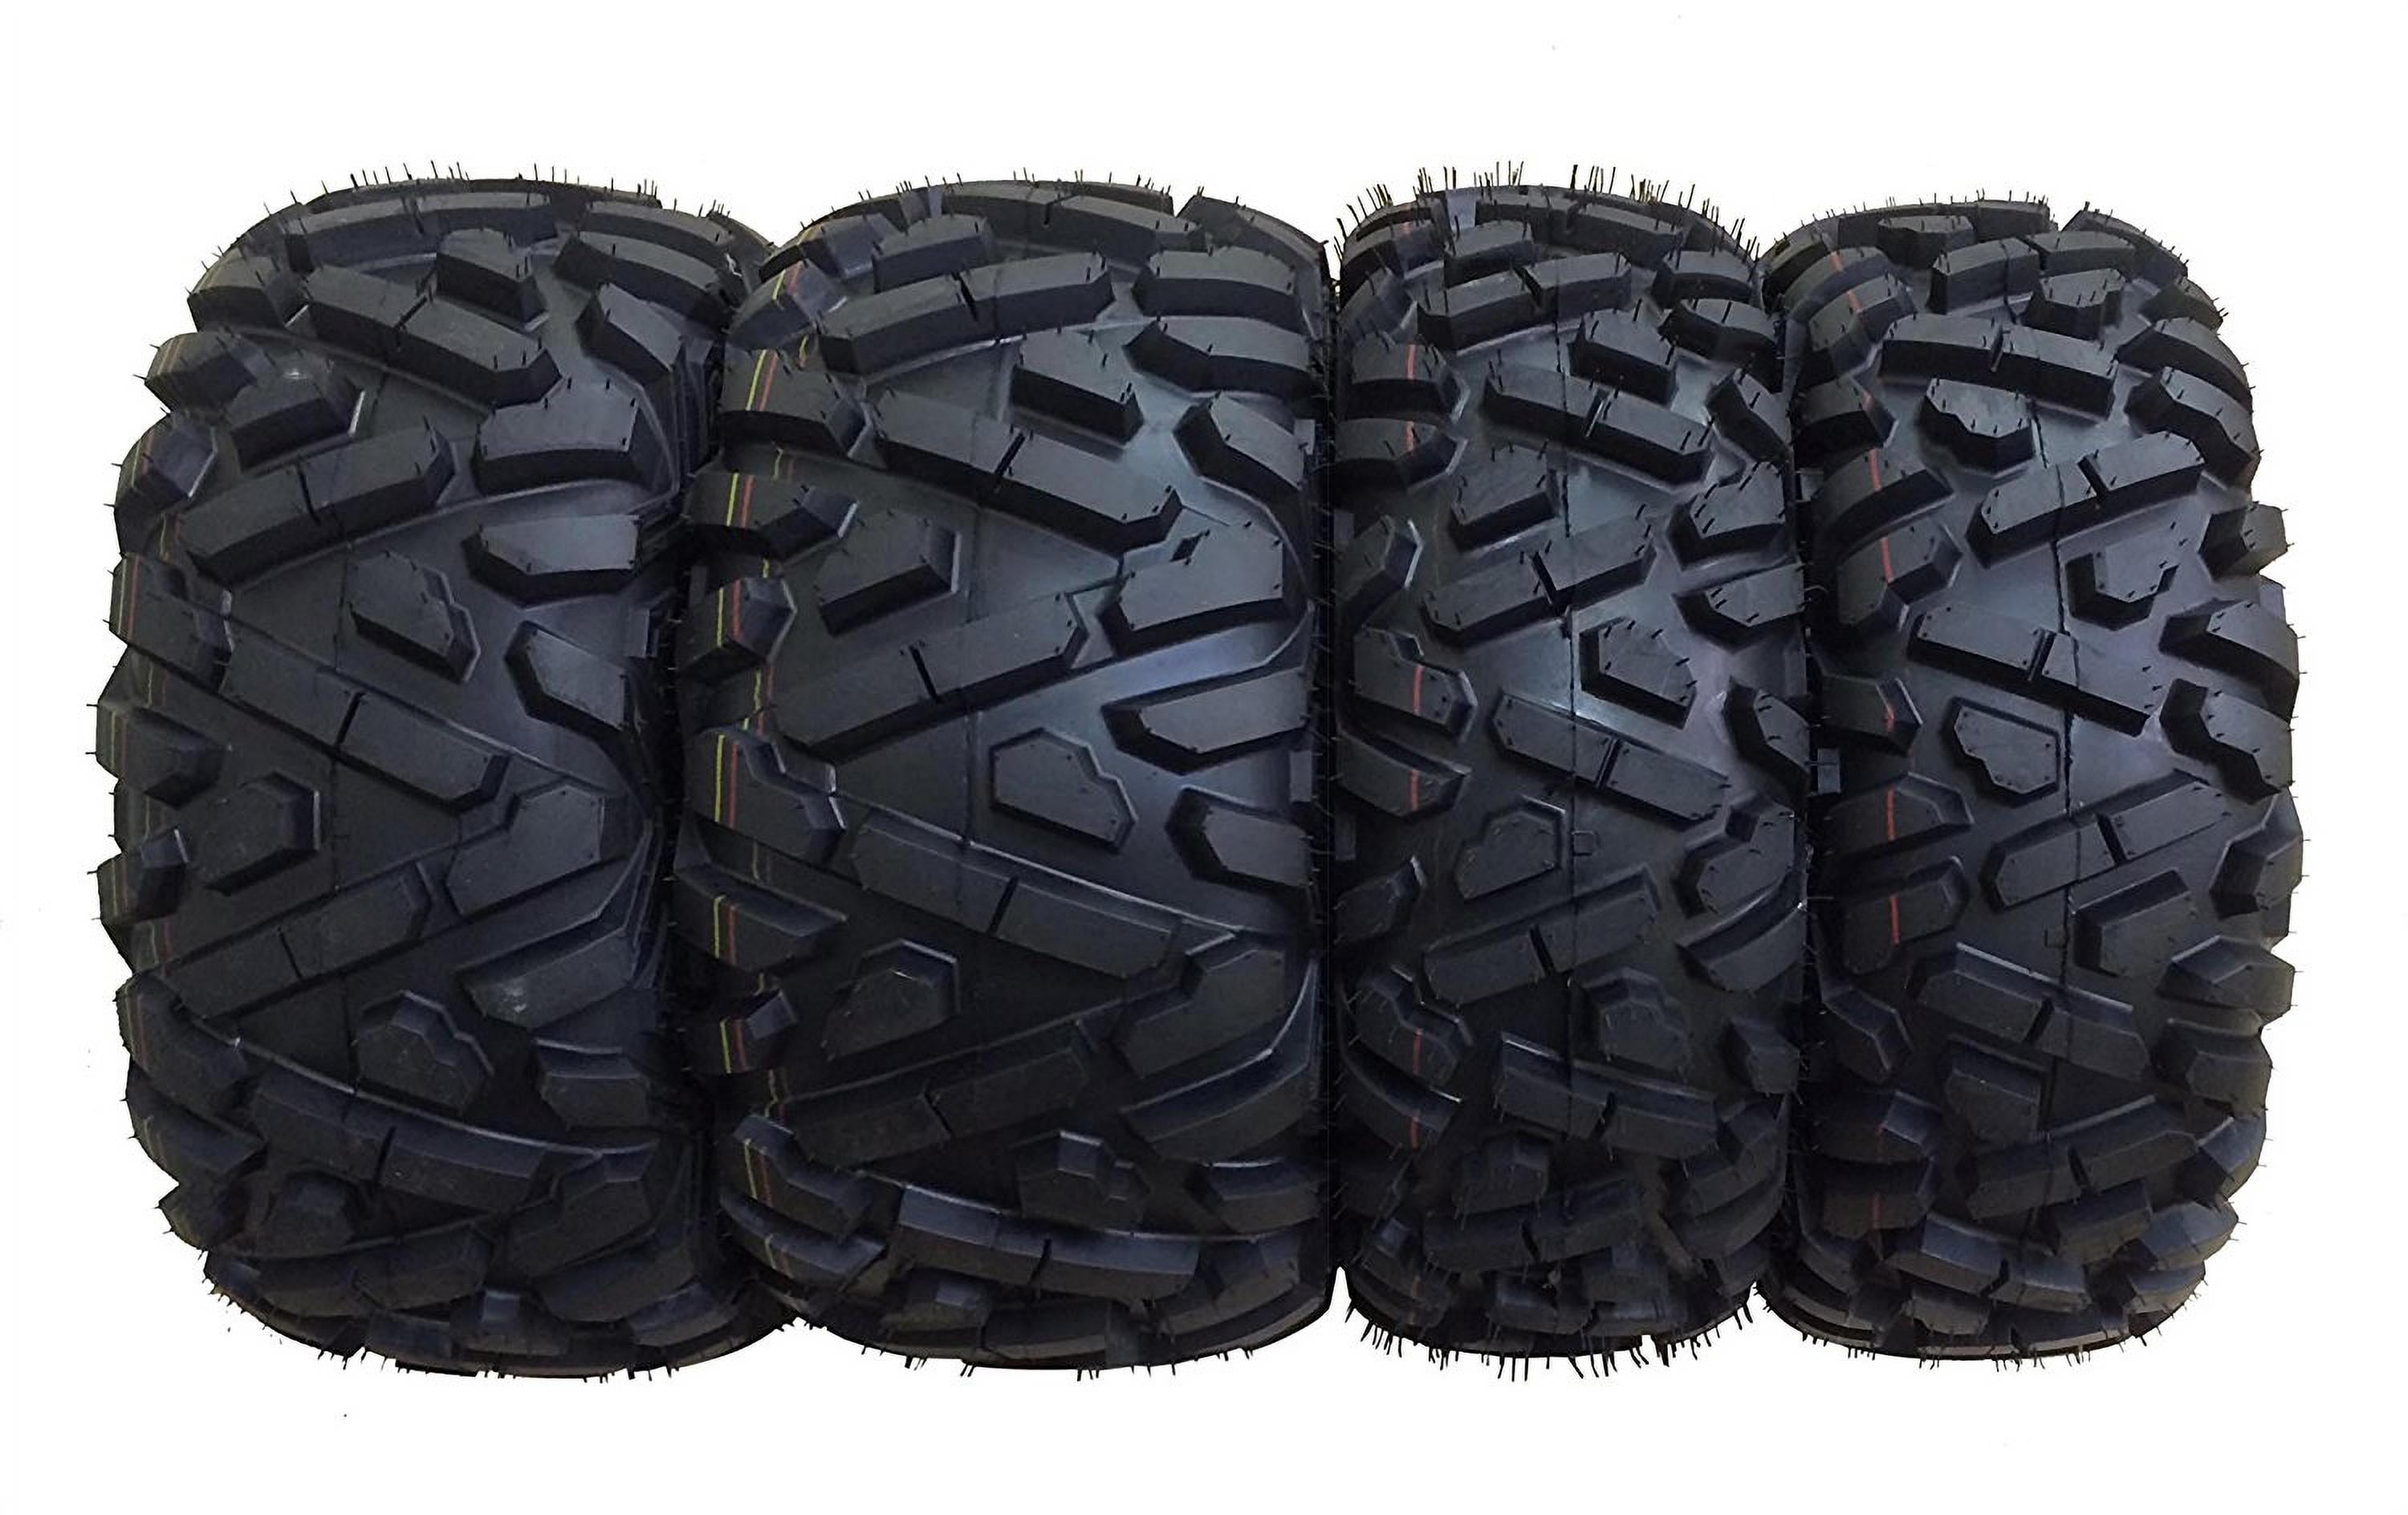 HU02 All Terrain 15mm Tread Depth 25x8x12 25x10x12 Trail Sand Off-Road Tires 25x8-12 Front & 25x10-12 Rear Full Set New Premium HALBERD 6PR ATV/UTV Tires 